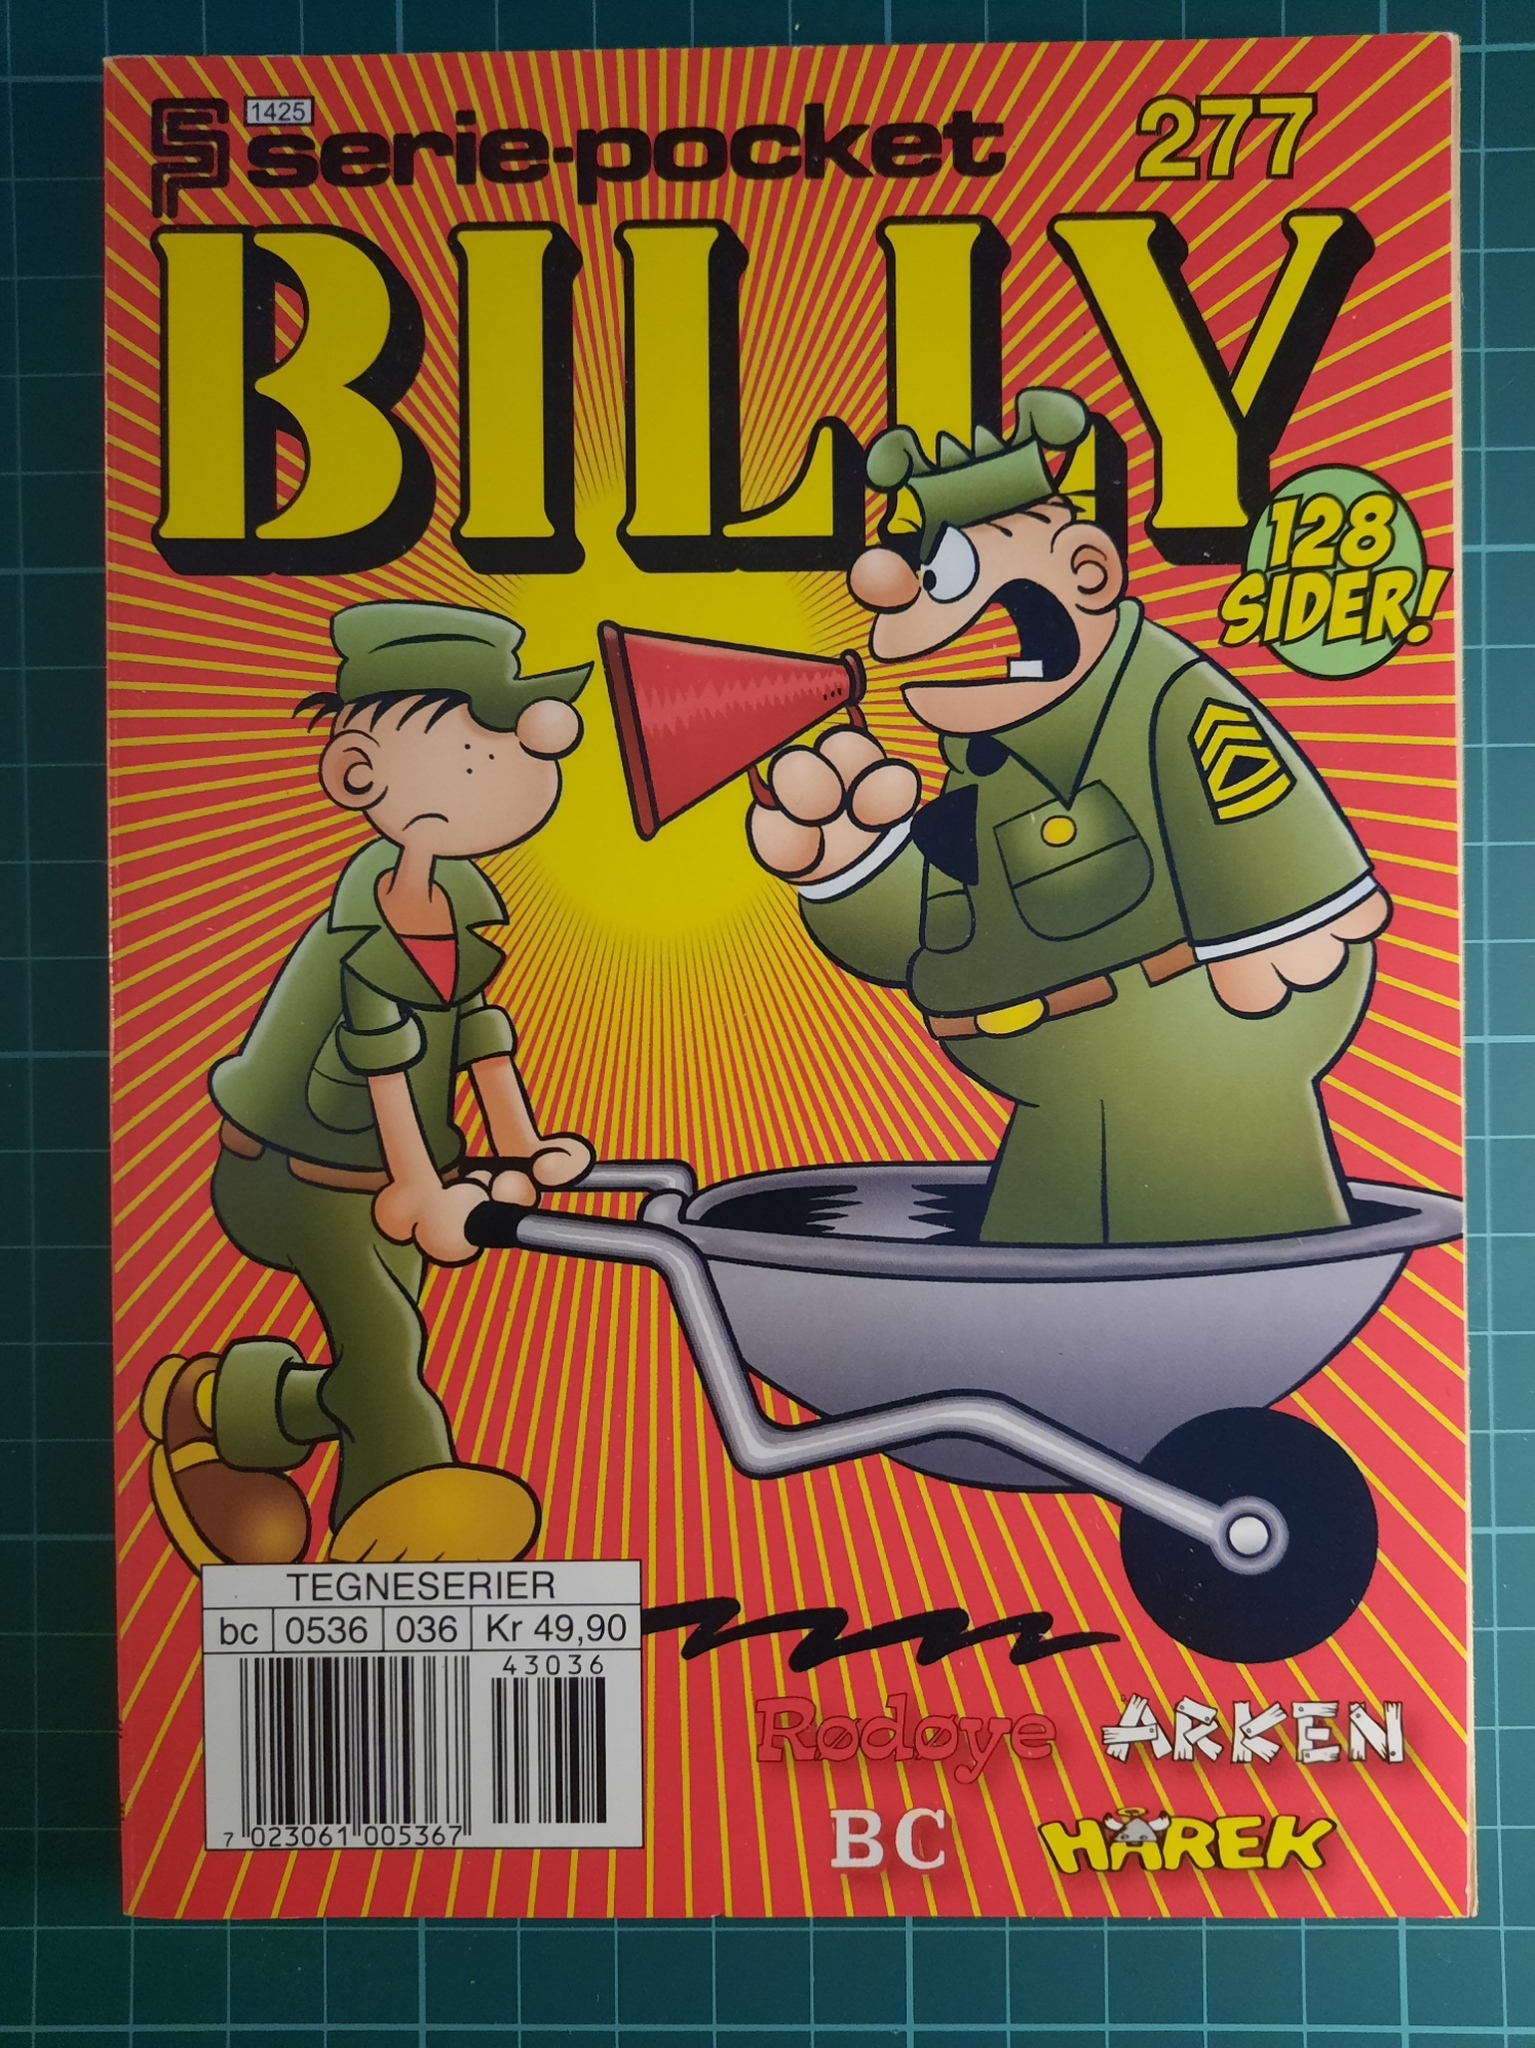 Serie-pocket 277 : Billy